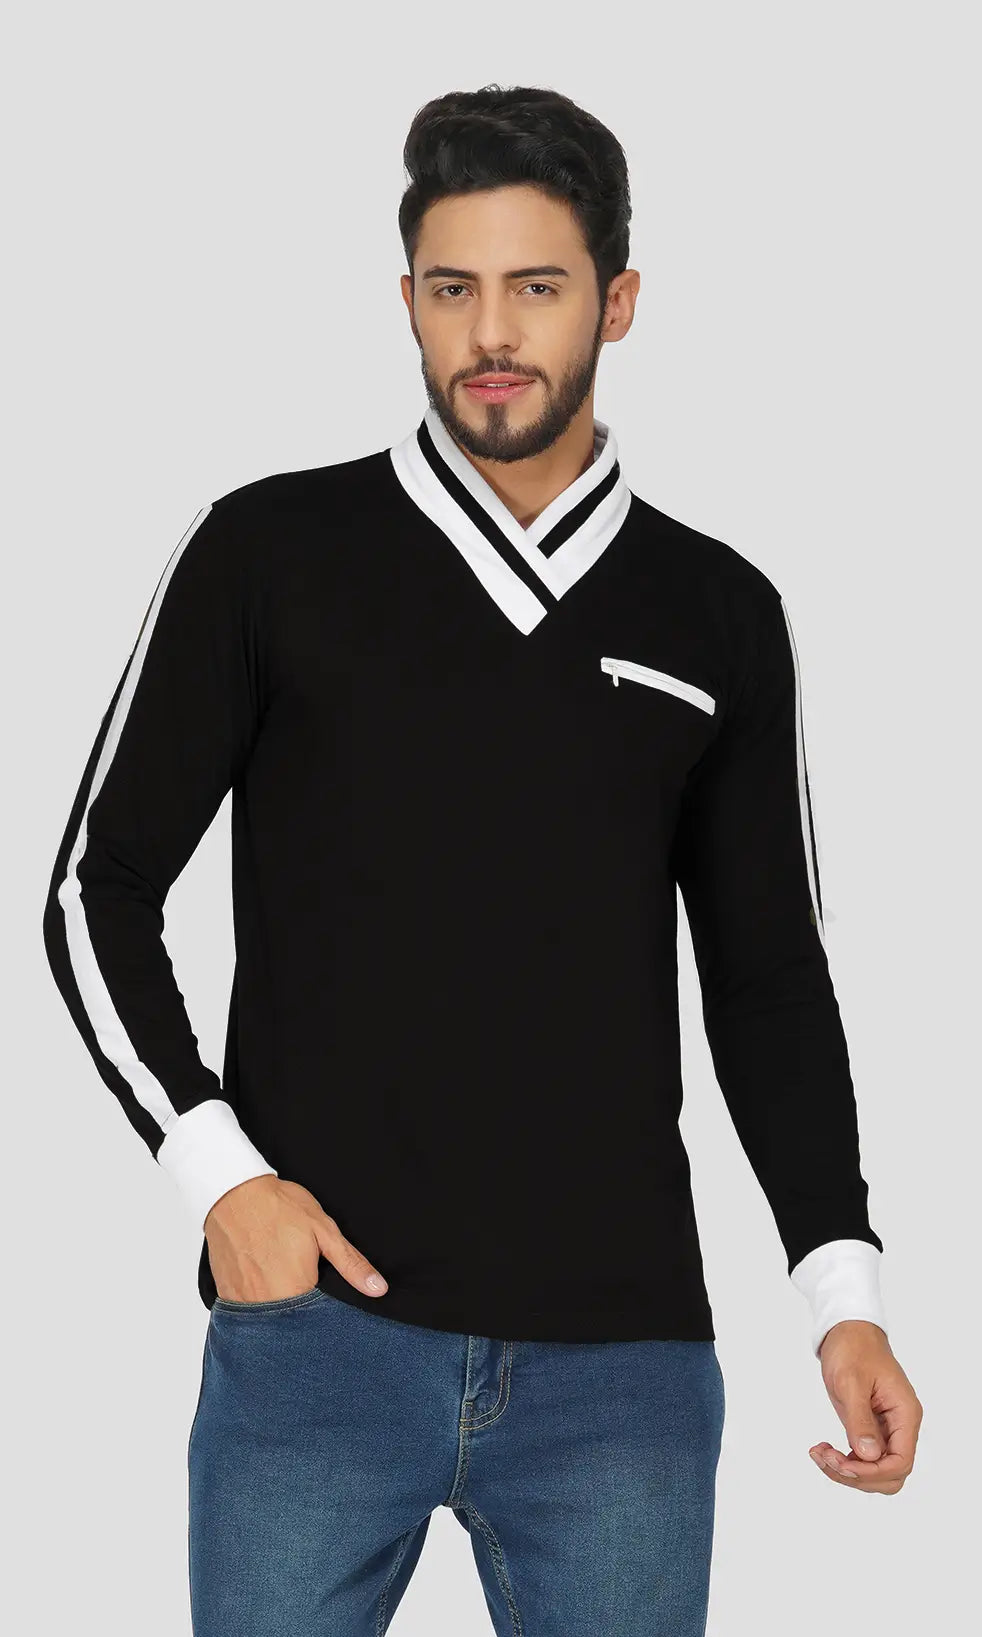 Mebadass Men's Fullsleeve Colorblocked Regular Size T-shirt - Black White